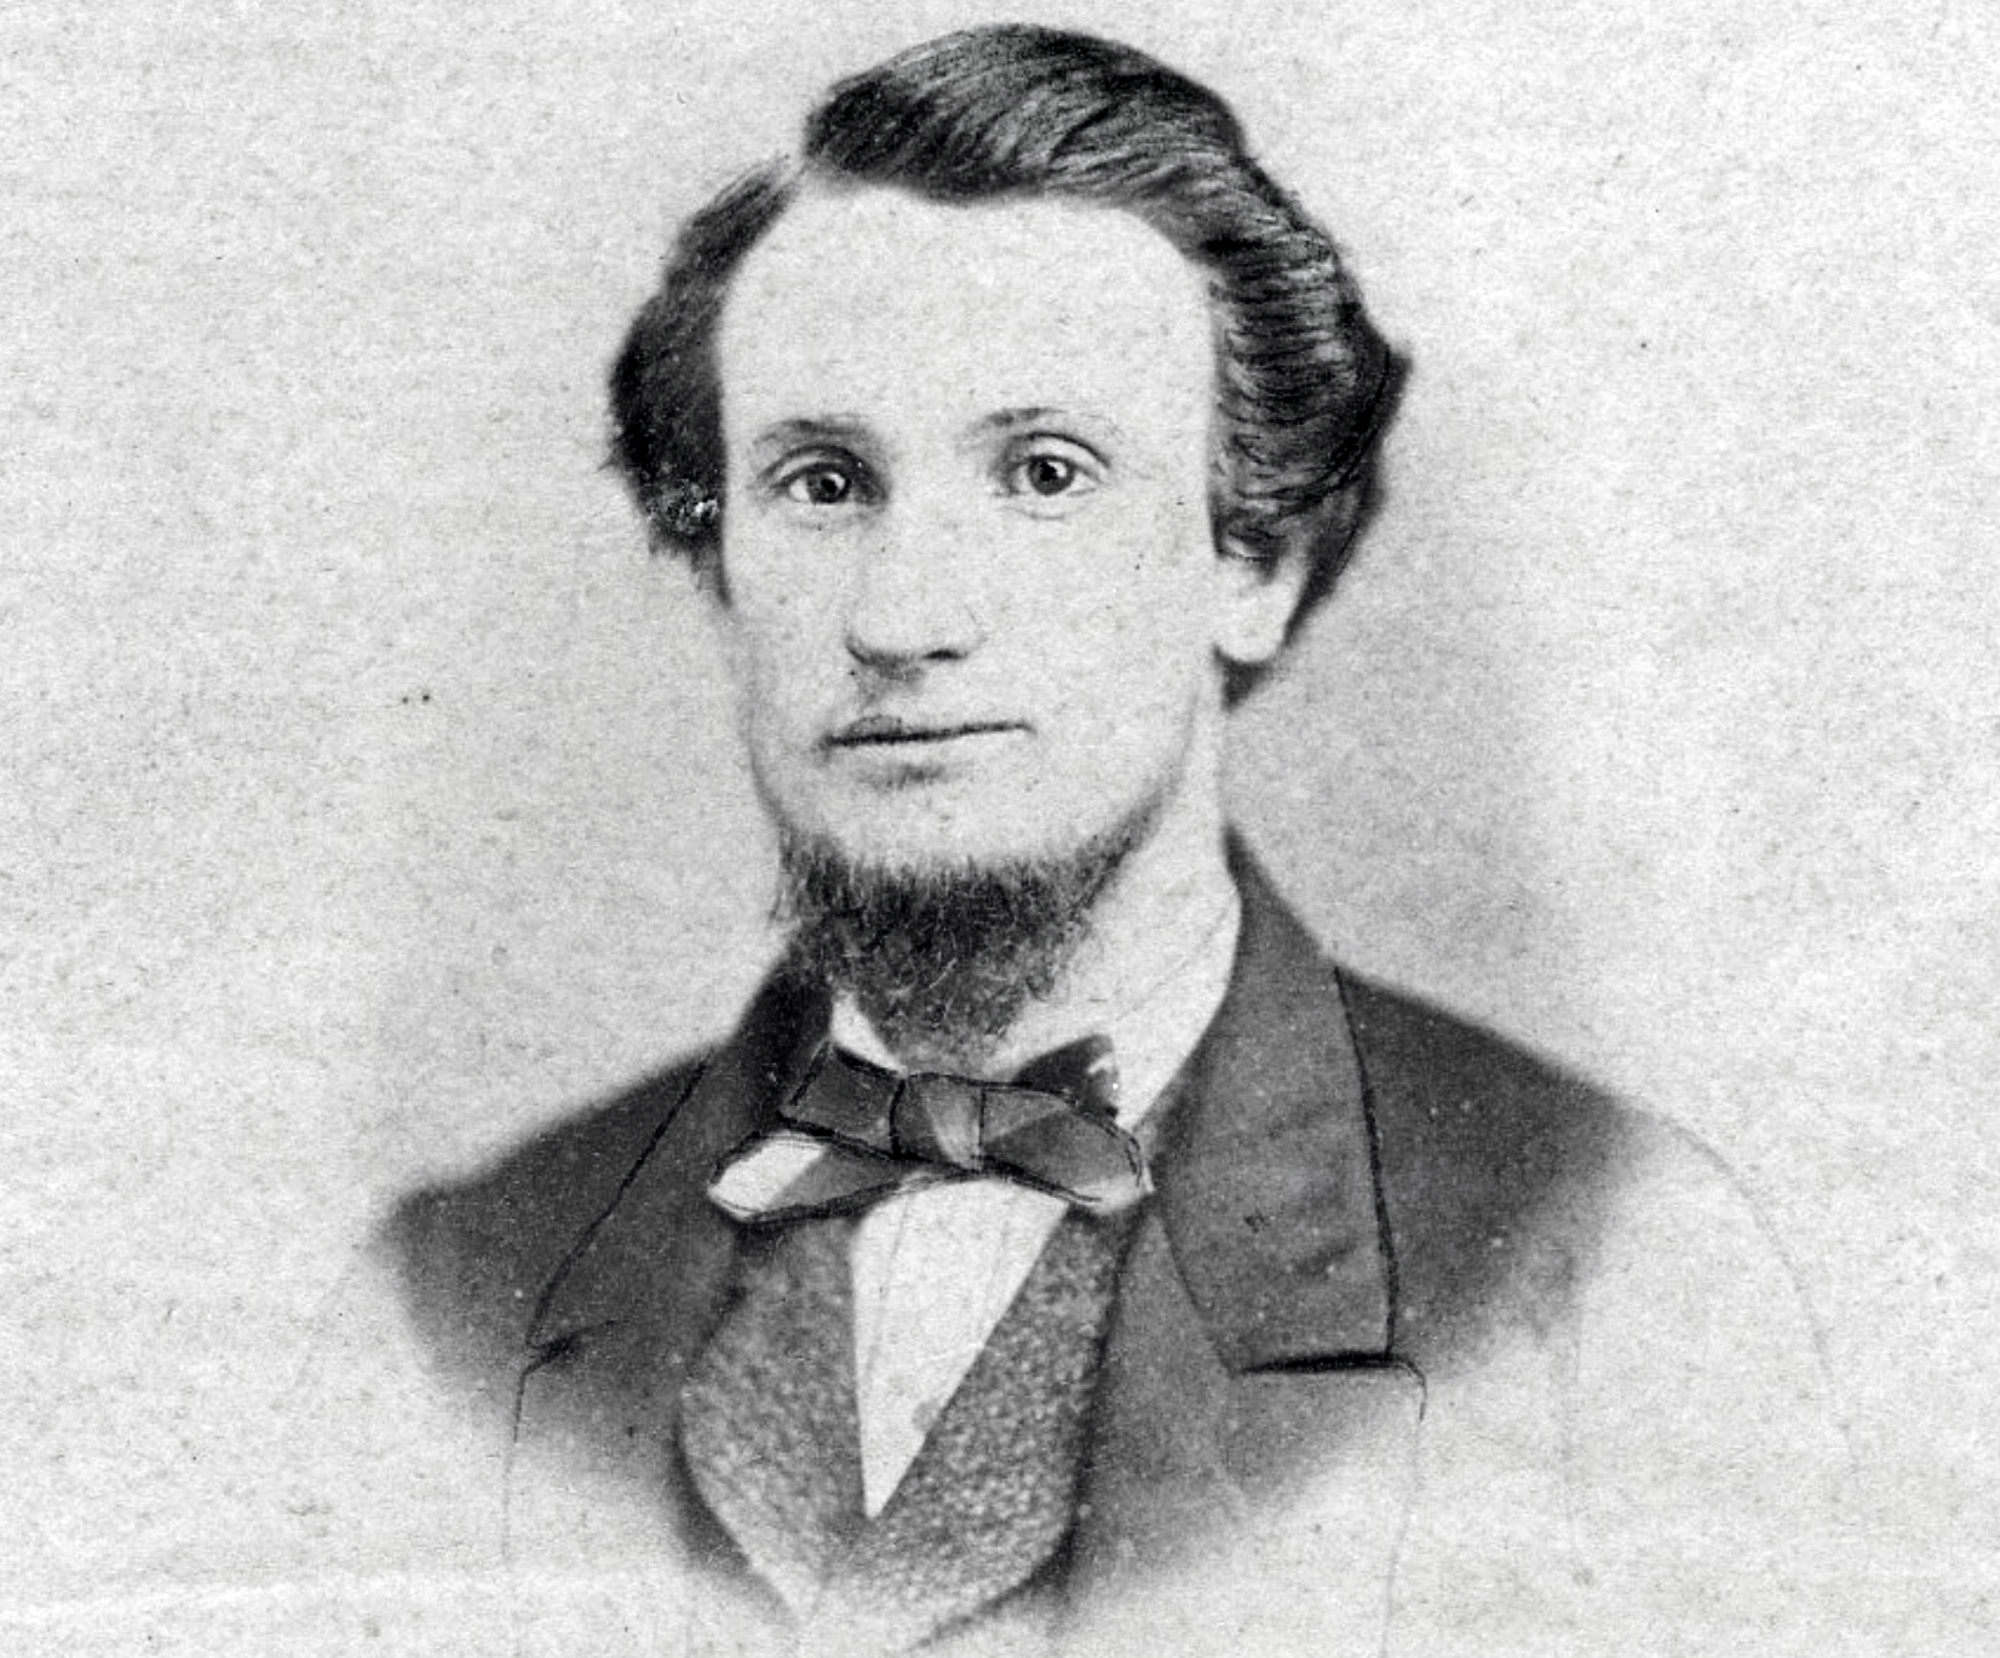 1861 portrait